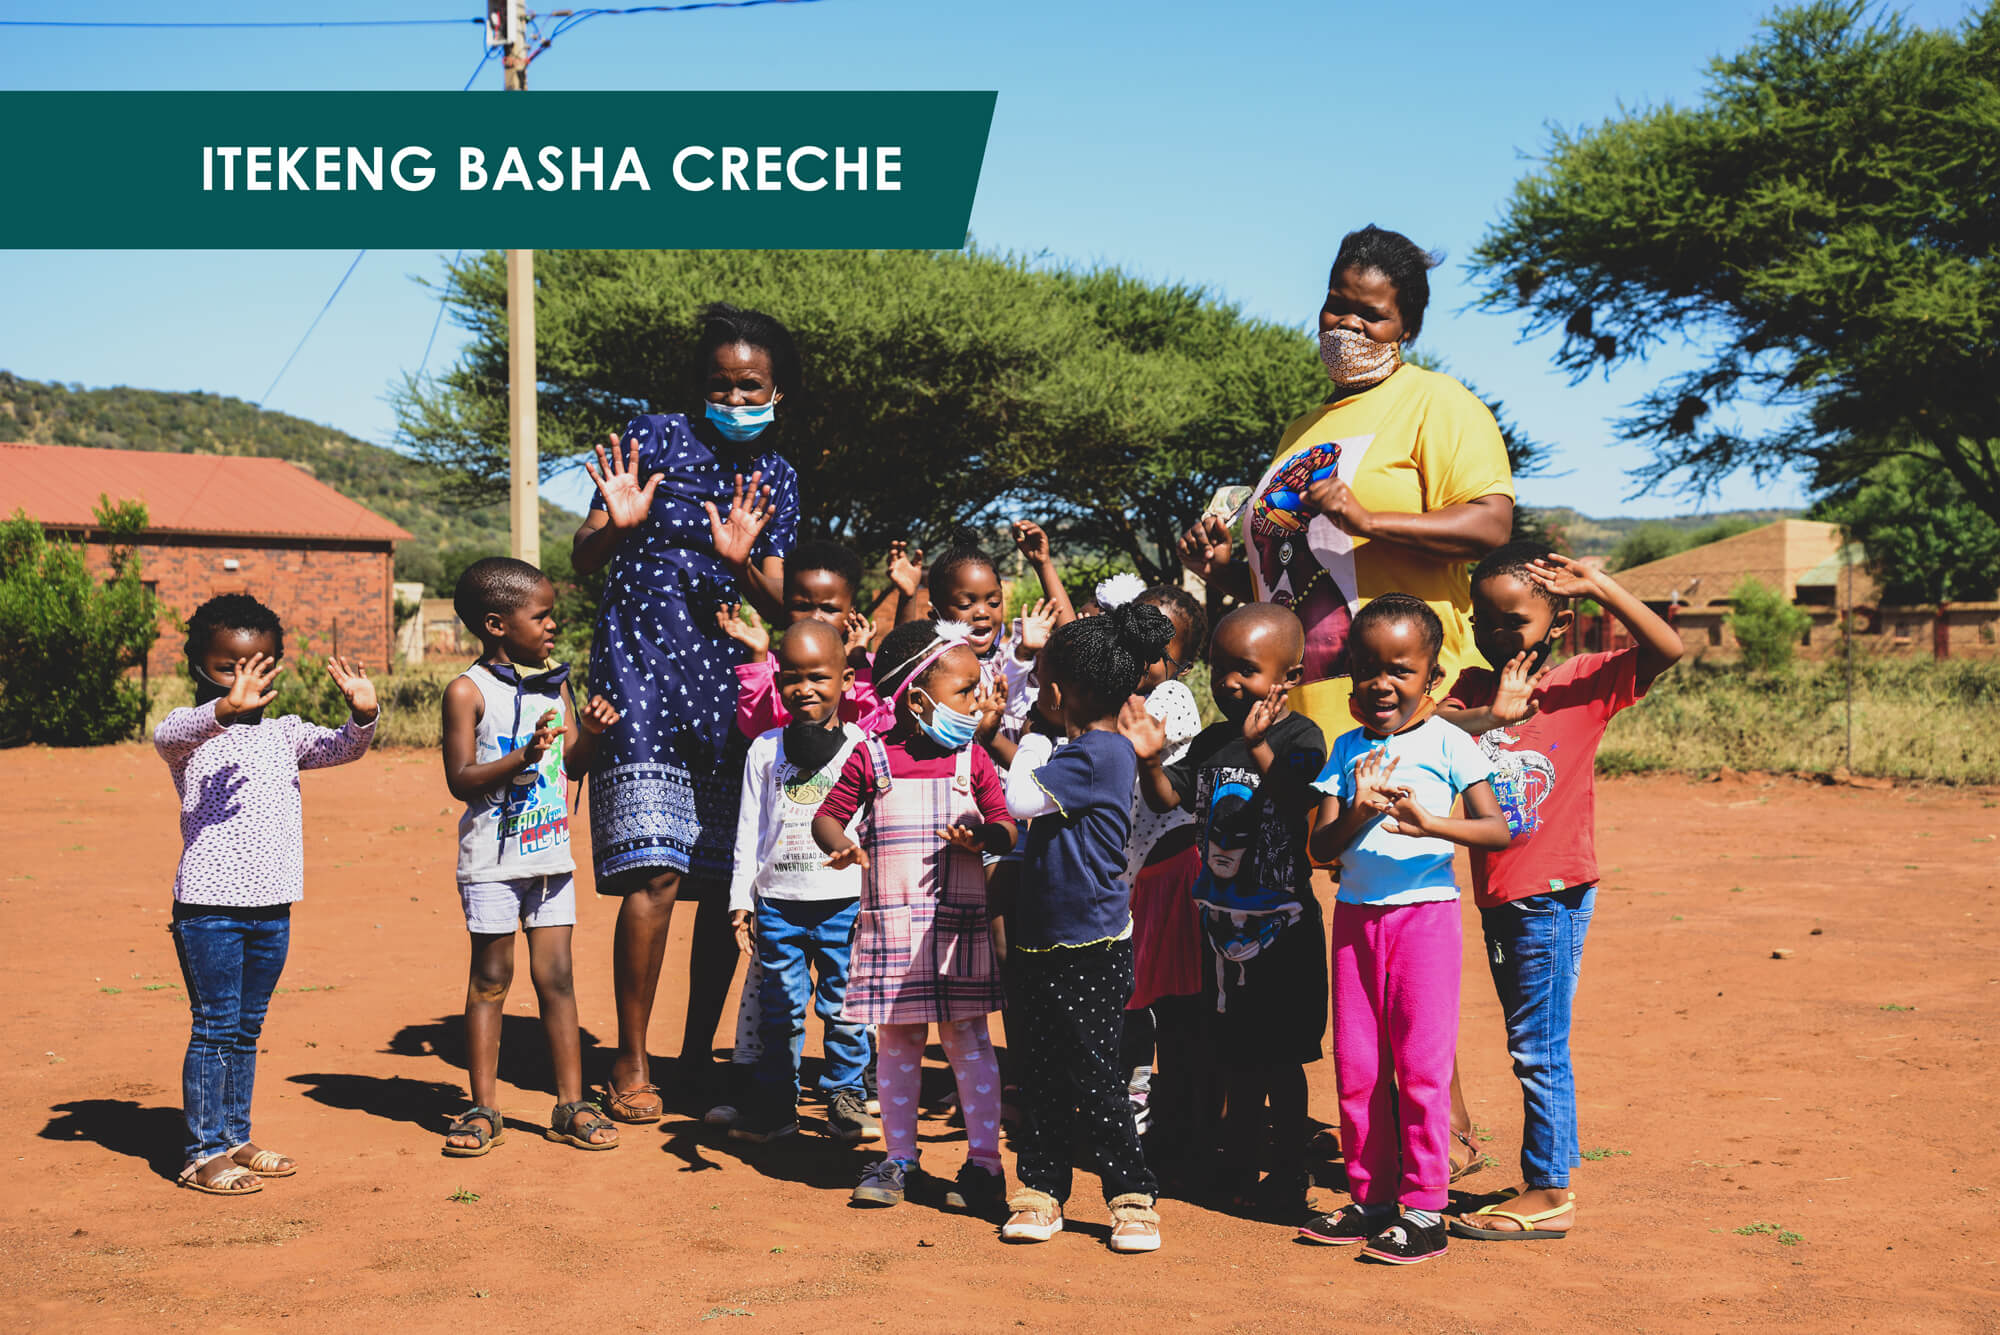 Itekeng Basha Creche – Obakeng Village